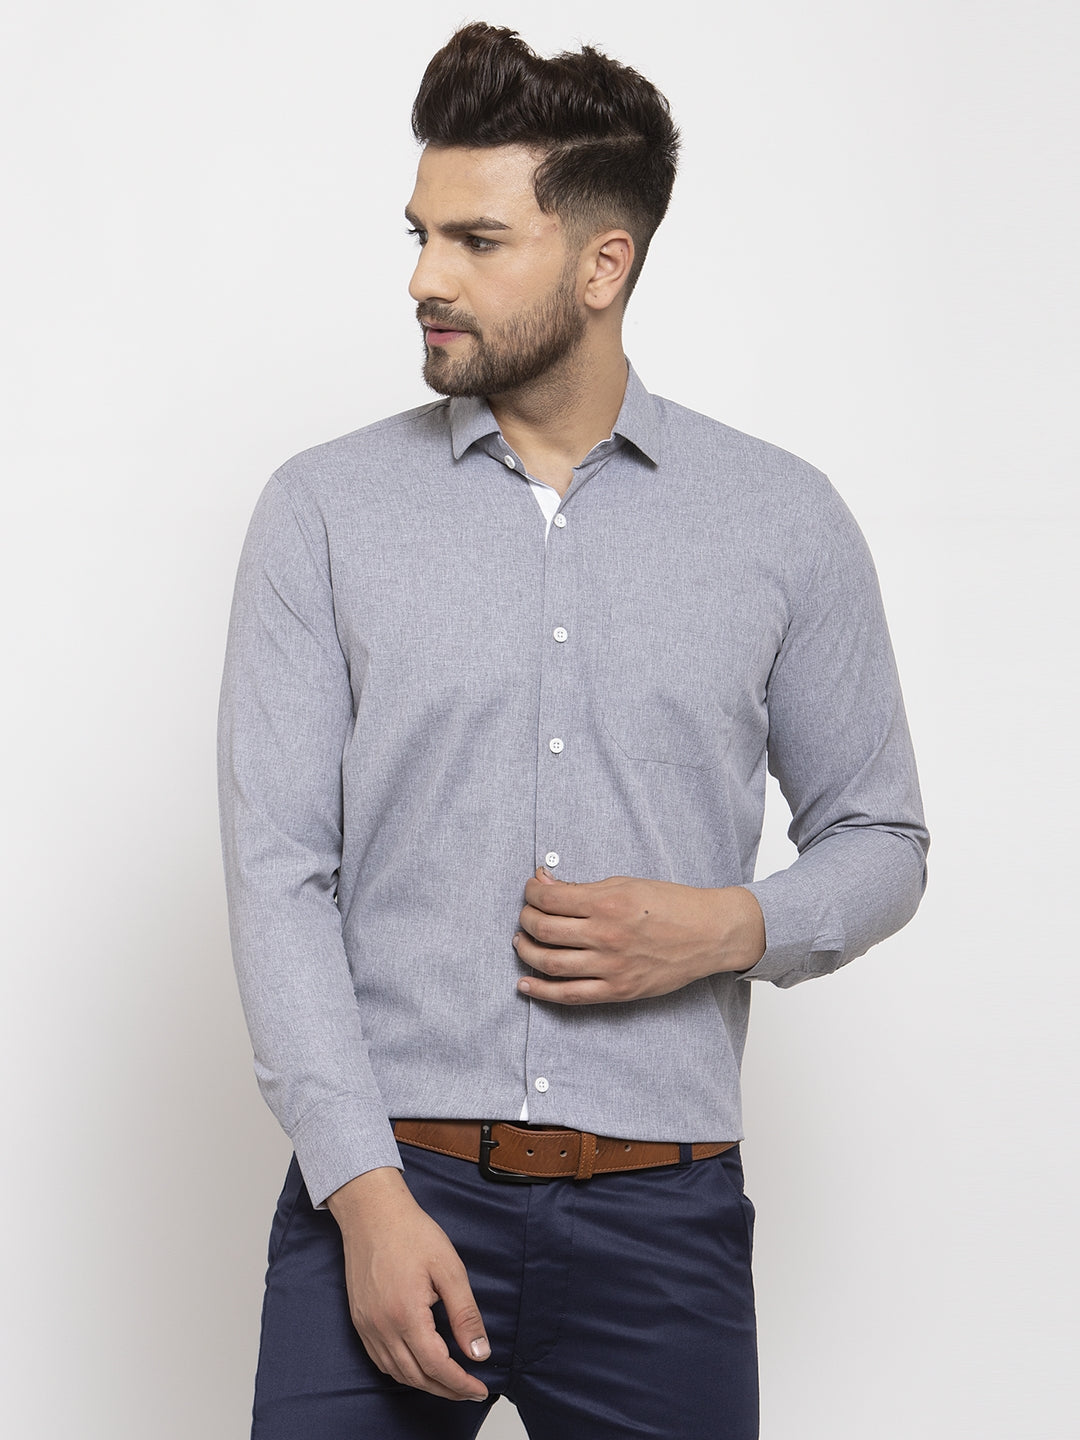 Men's Grey Formal Shirt with white detailing ( SF 419Grey ) - Jainish